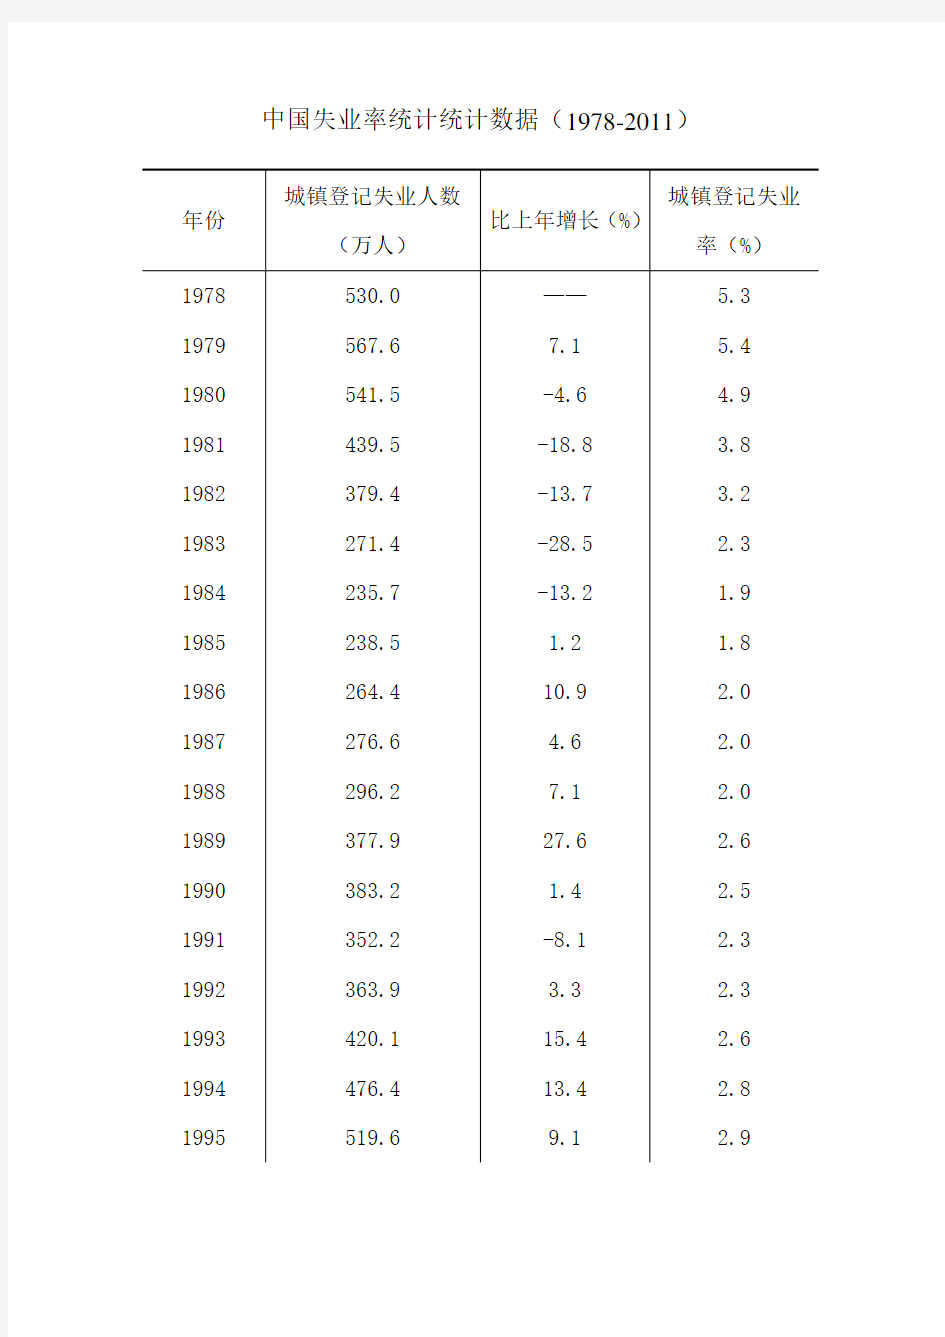 中国失业率统计统计数据(1978-2011)